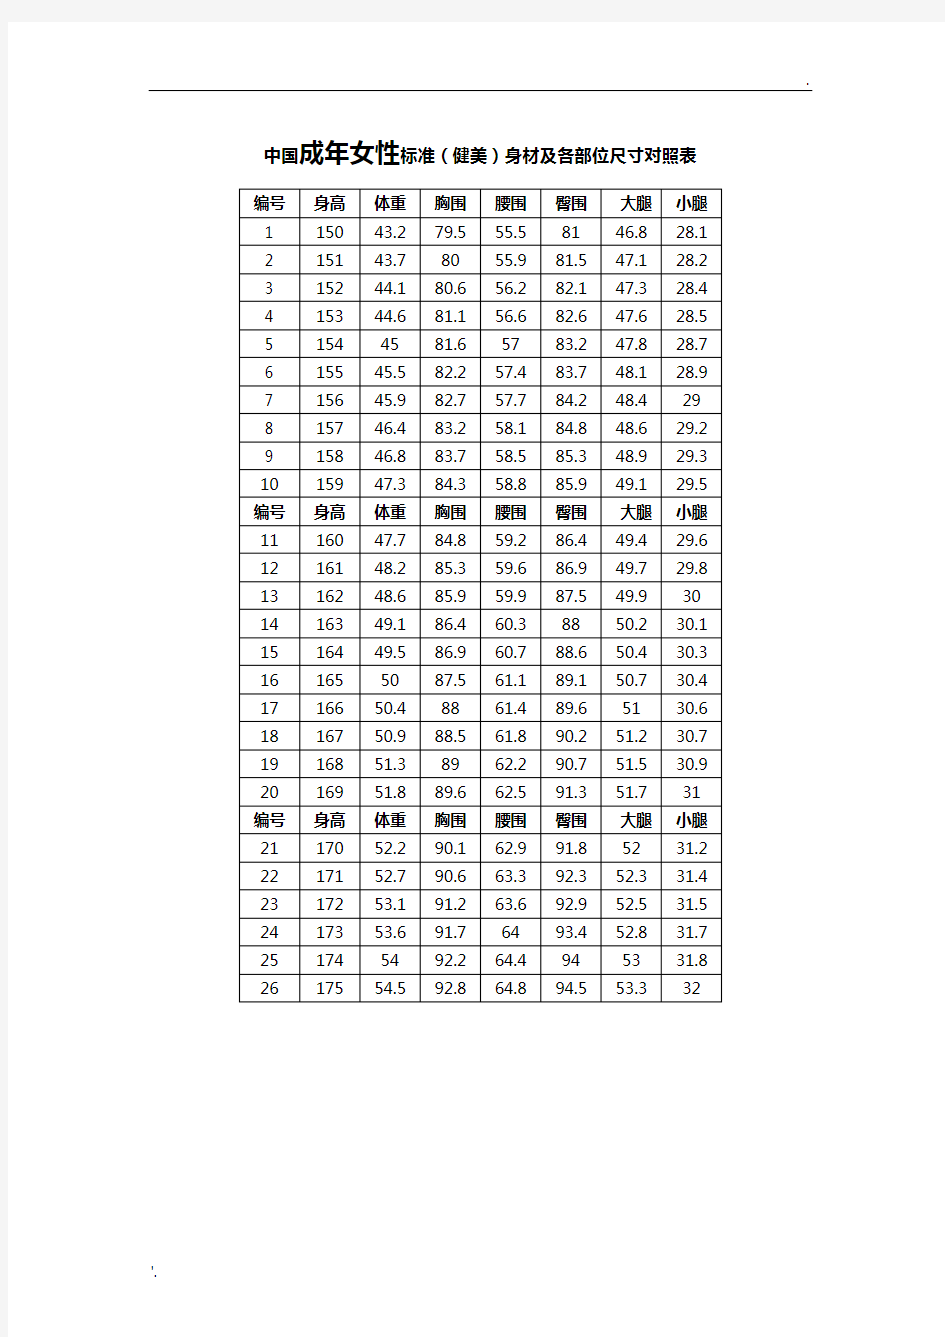 中国成年人标准(健美)身材及各部位尺寸对照表(包括男性与女性)